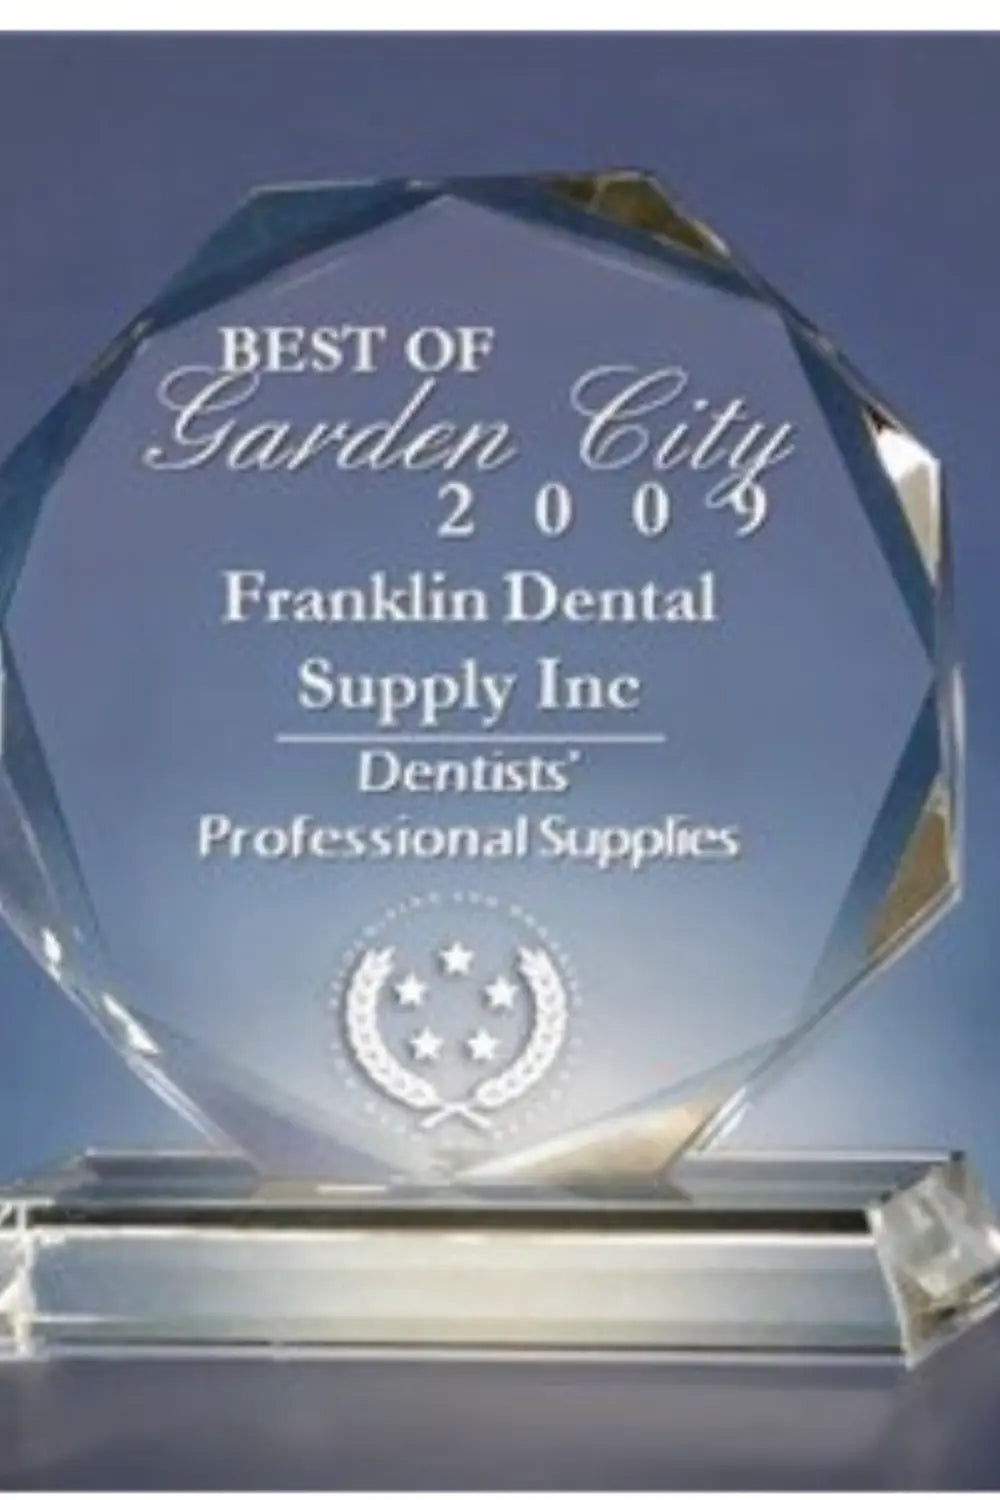 Award of Best of garden city  2009 Franklin dental supply inc